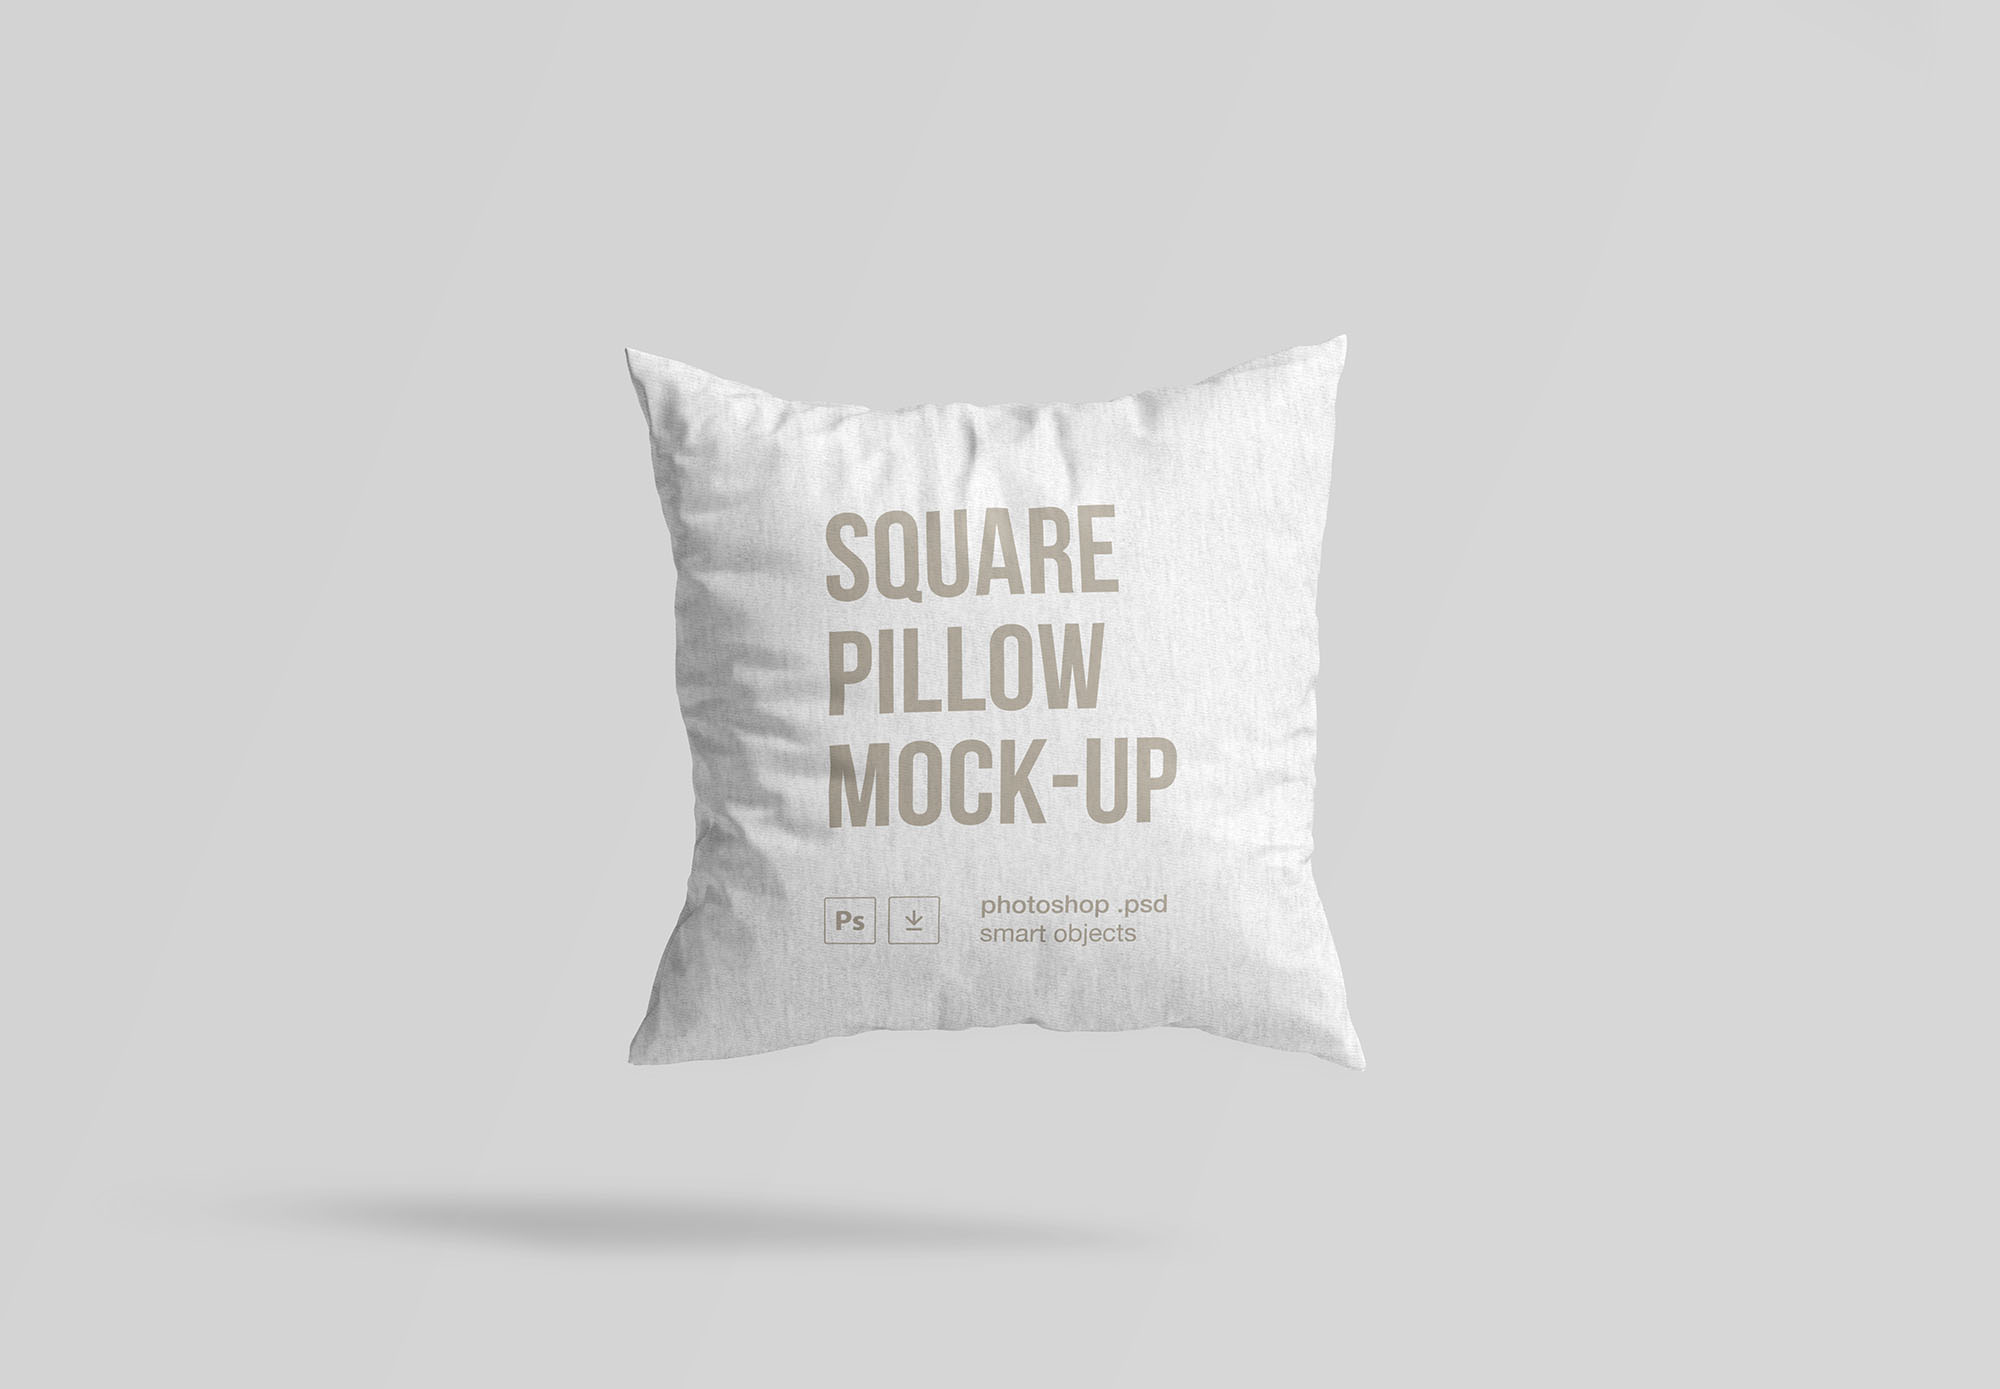 方形抱枕产品贴图展示模版 Square Pillow Moc